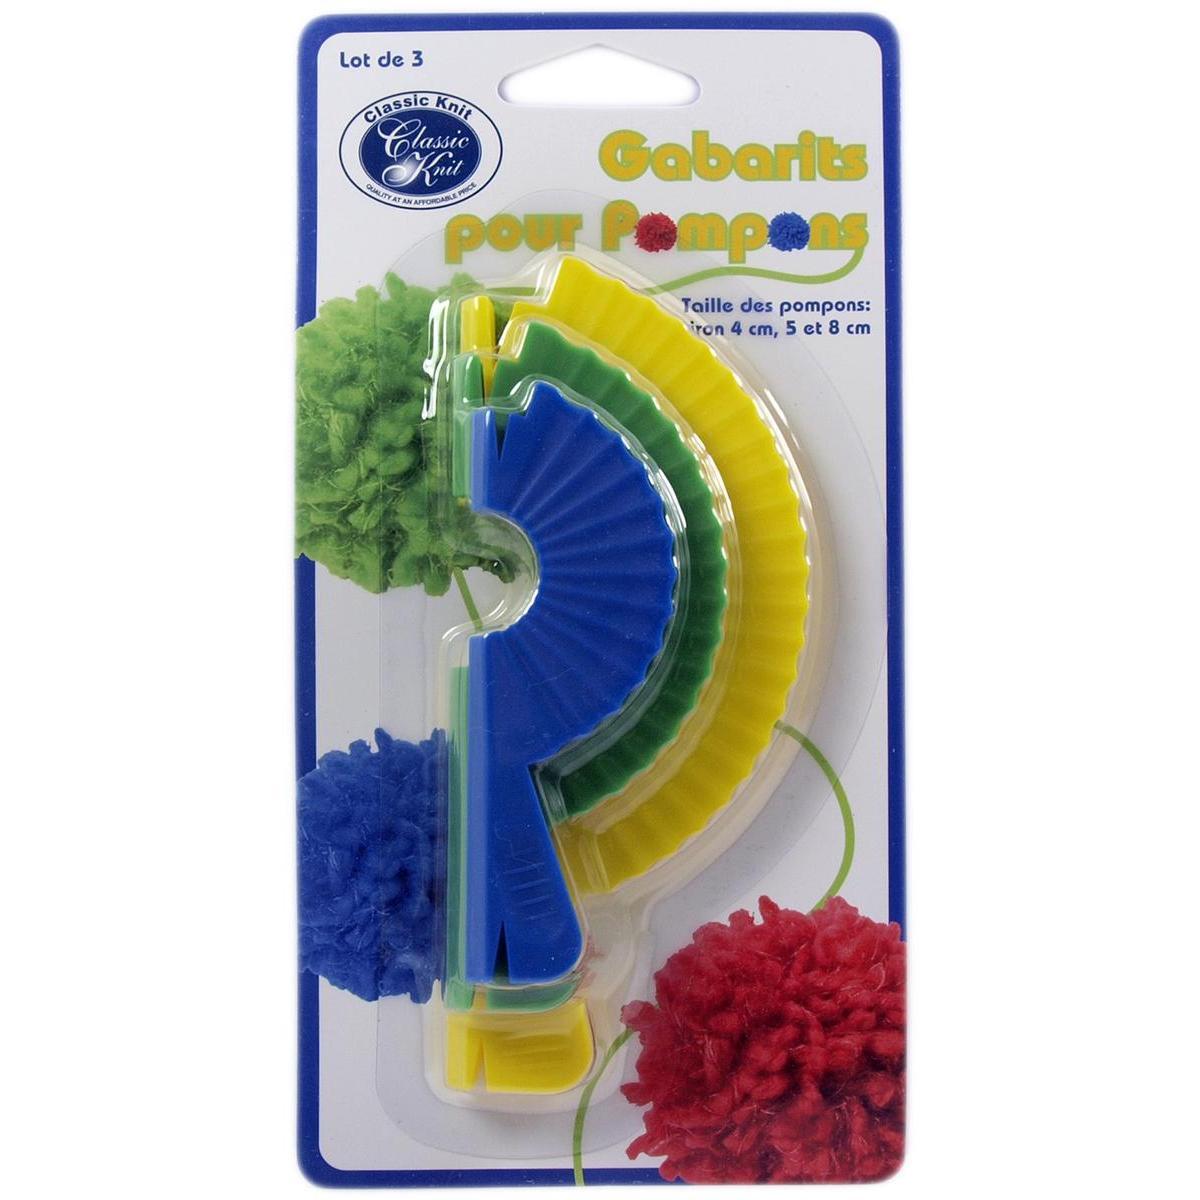 Gabarit à pompon - Plastique - Ø 4 - 5 - 8 cm - Multicolore